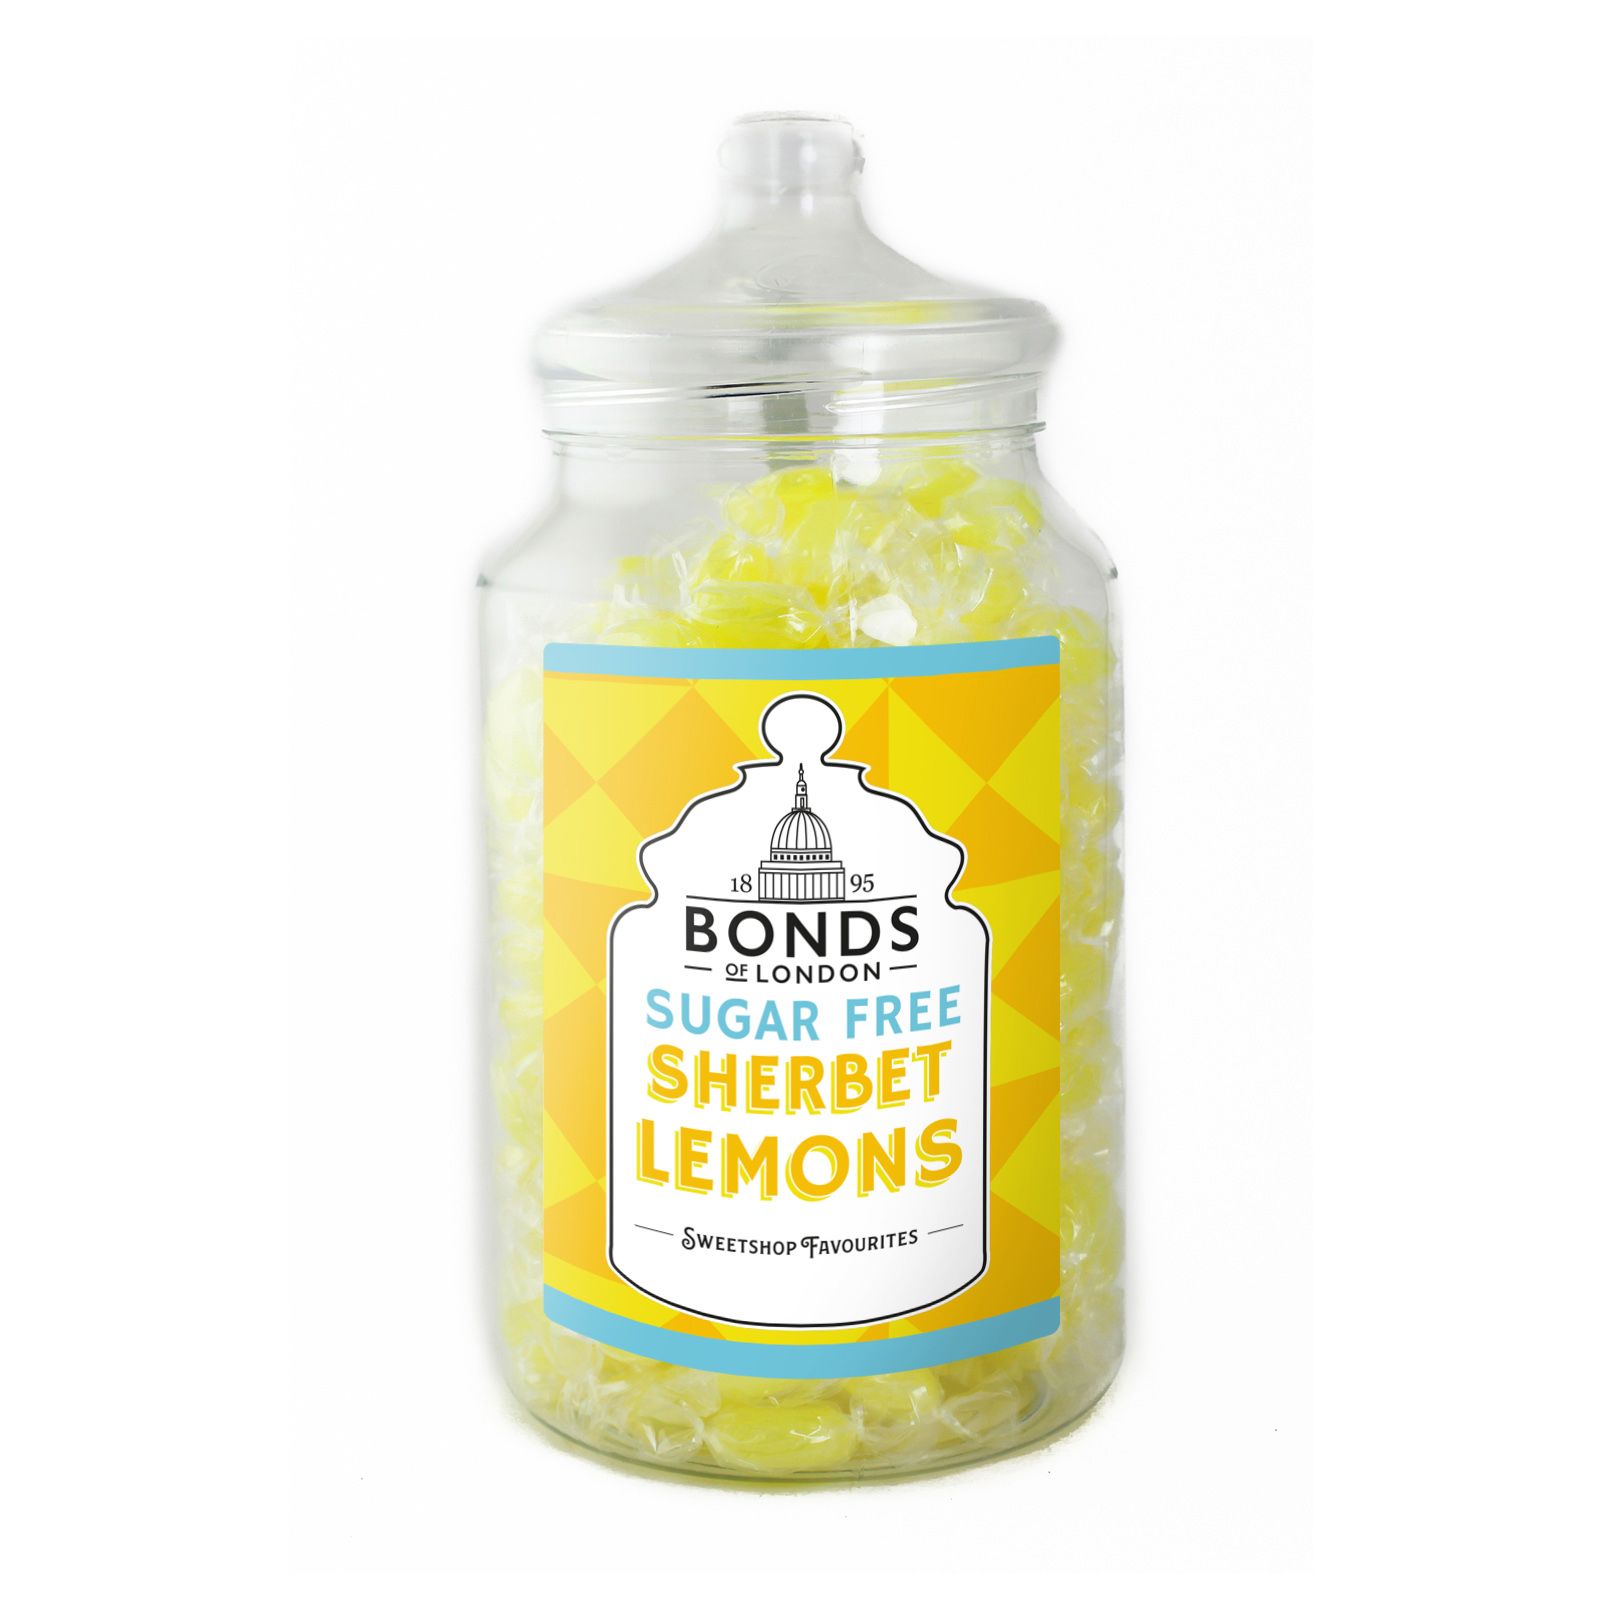 Bonds Sugar Free Sherbet Lemons Jar - 2kg